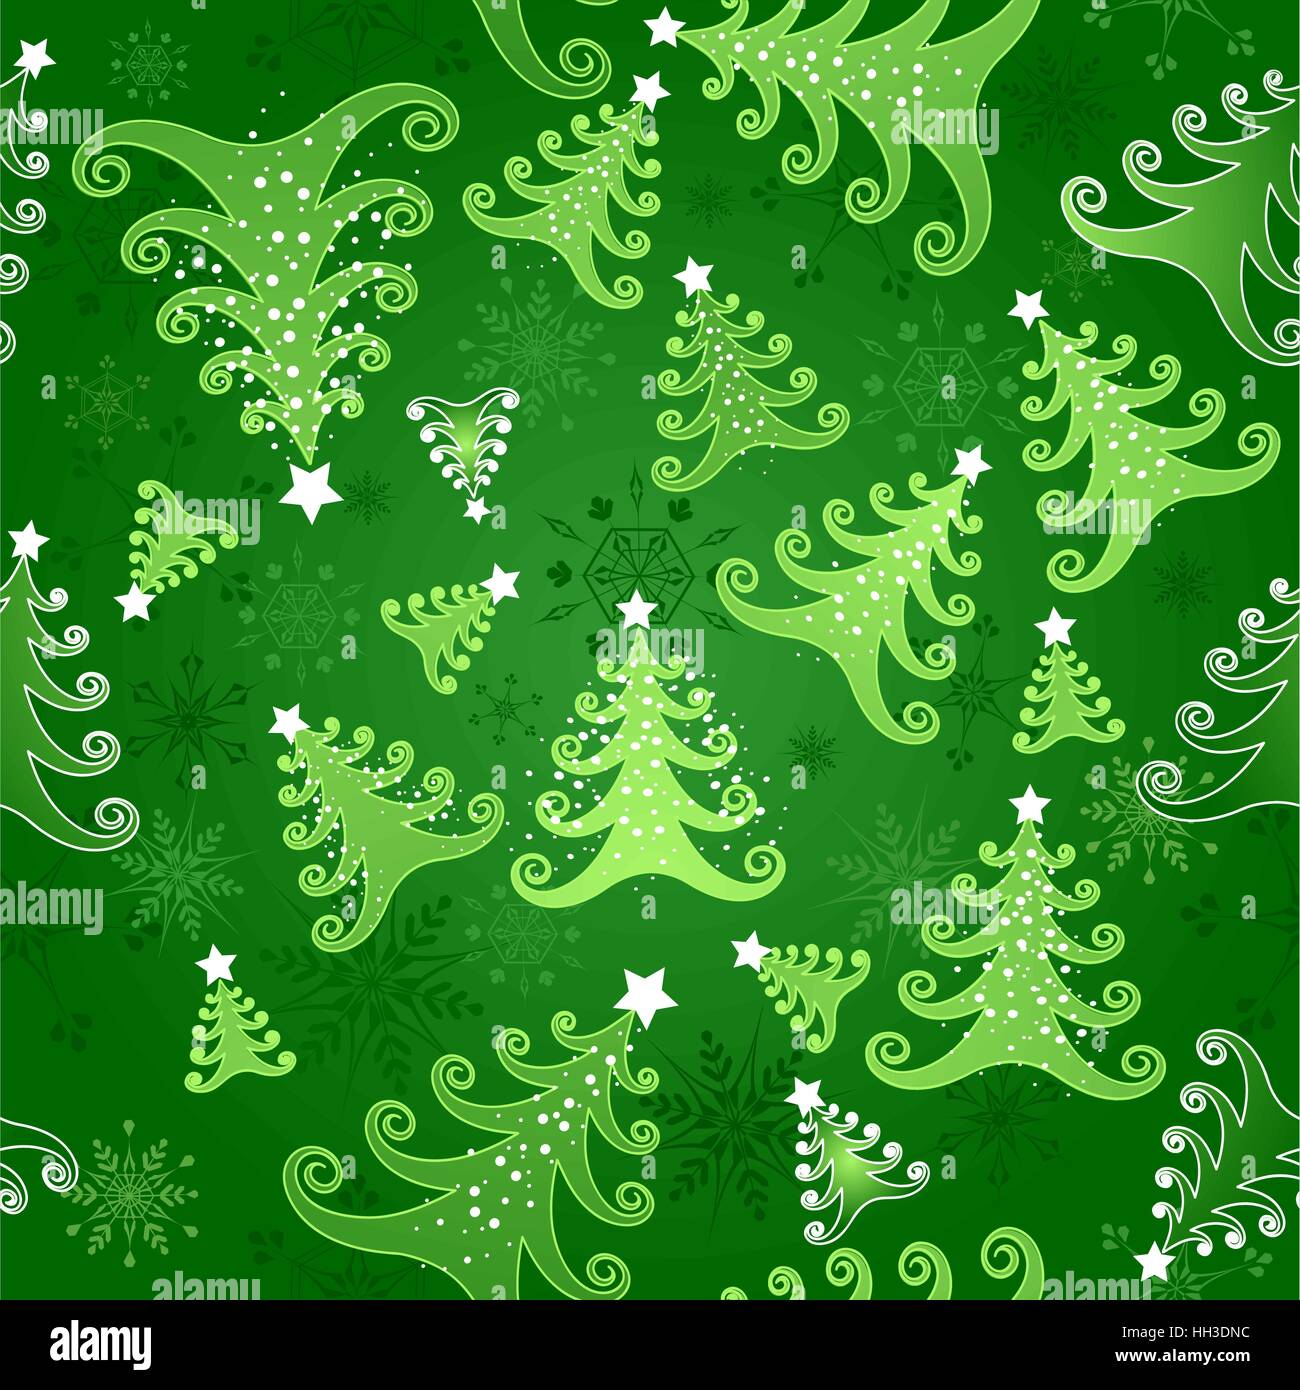 Grüner nahtlose Hintergrund mit Schneeflocken und grüne stilisierte Weihnachtsbäume dekoriert mit weißen Sternen. Stock Vektor